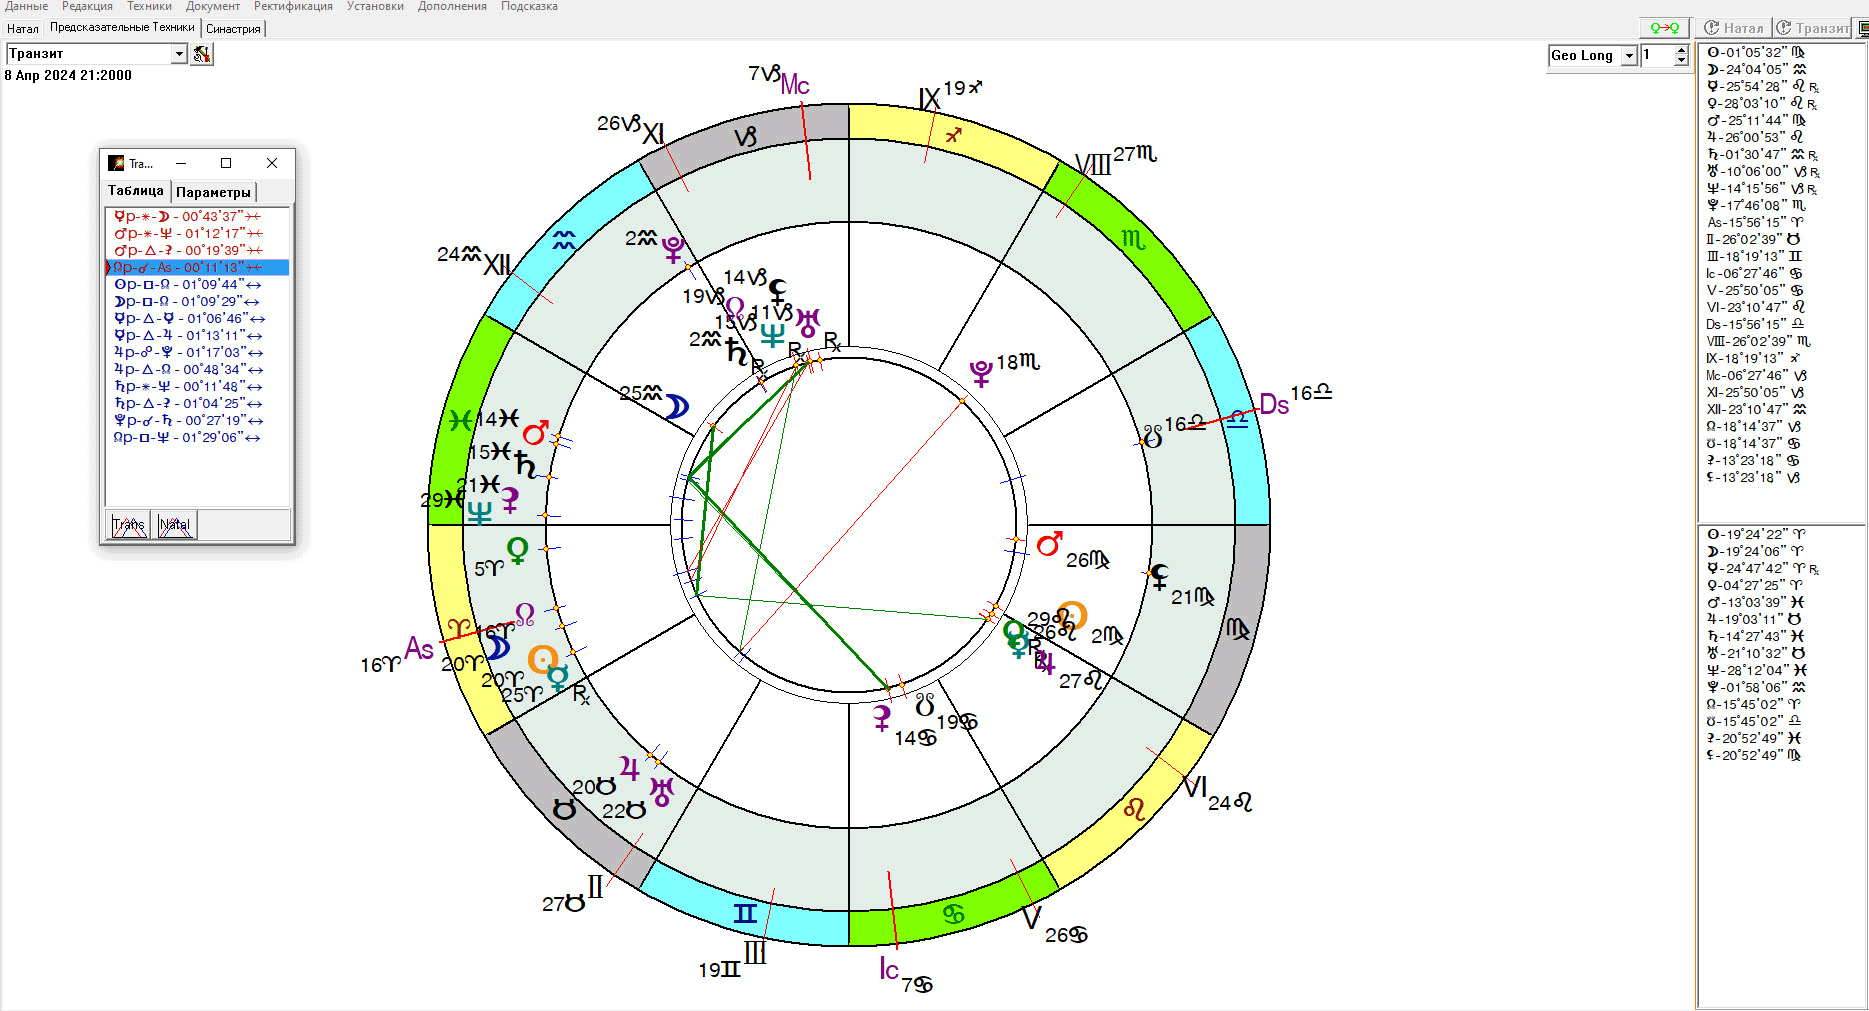 Астрологічна карта-композит Сонячного затемнення 08.04.2024